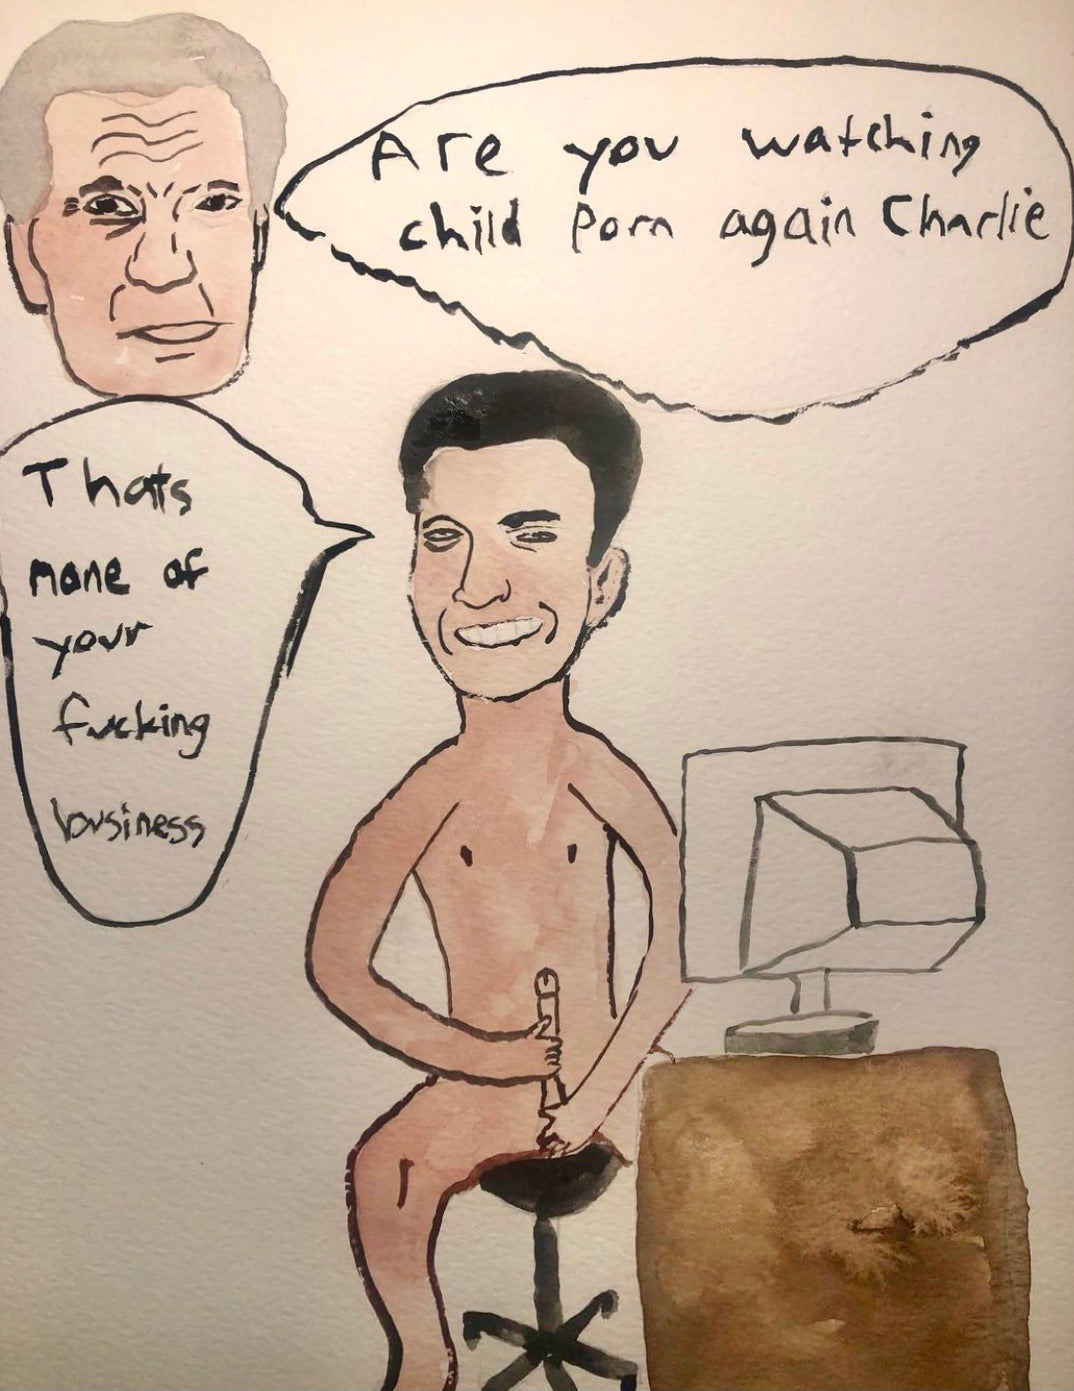 Martin Sheen Catches Charlie Sheen Watching CP Again